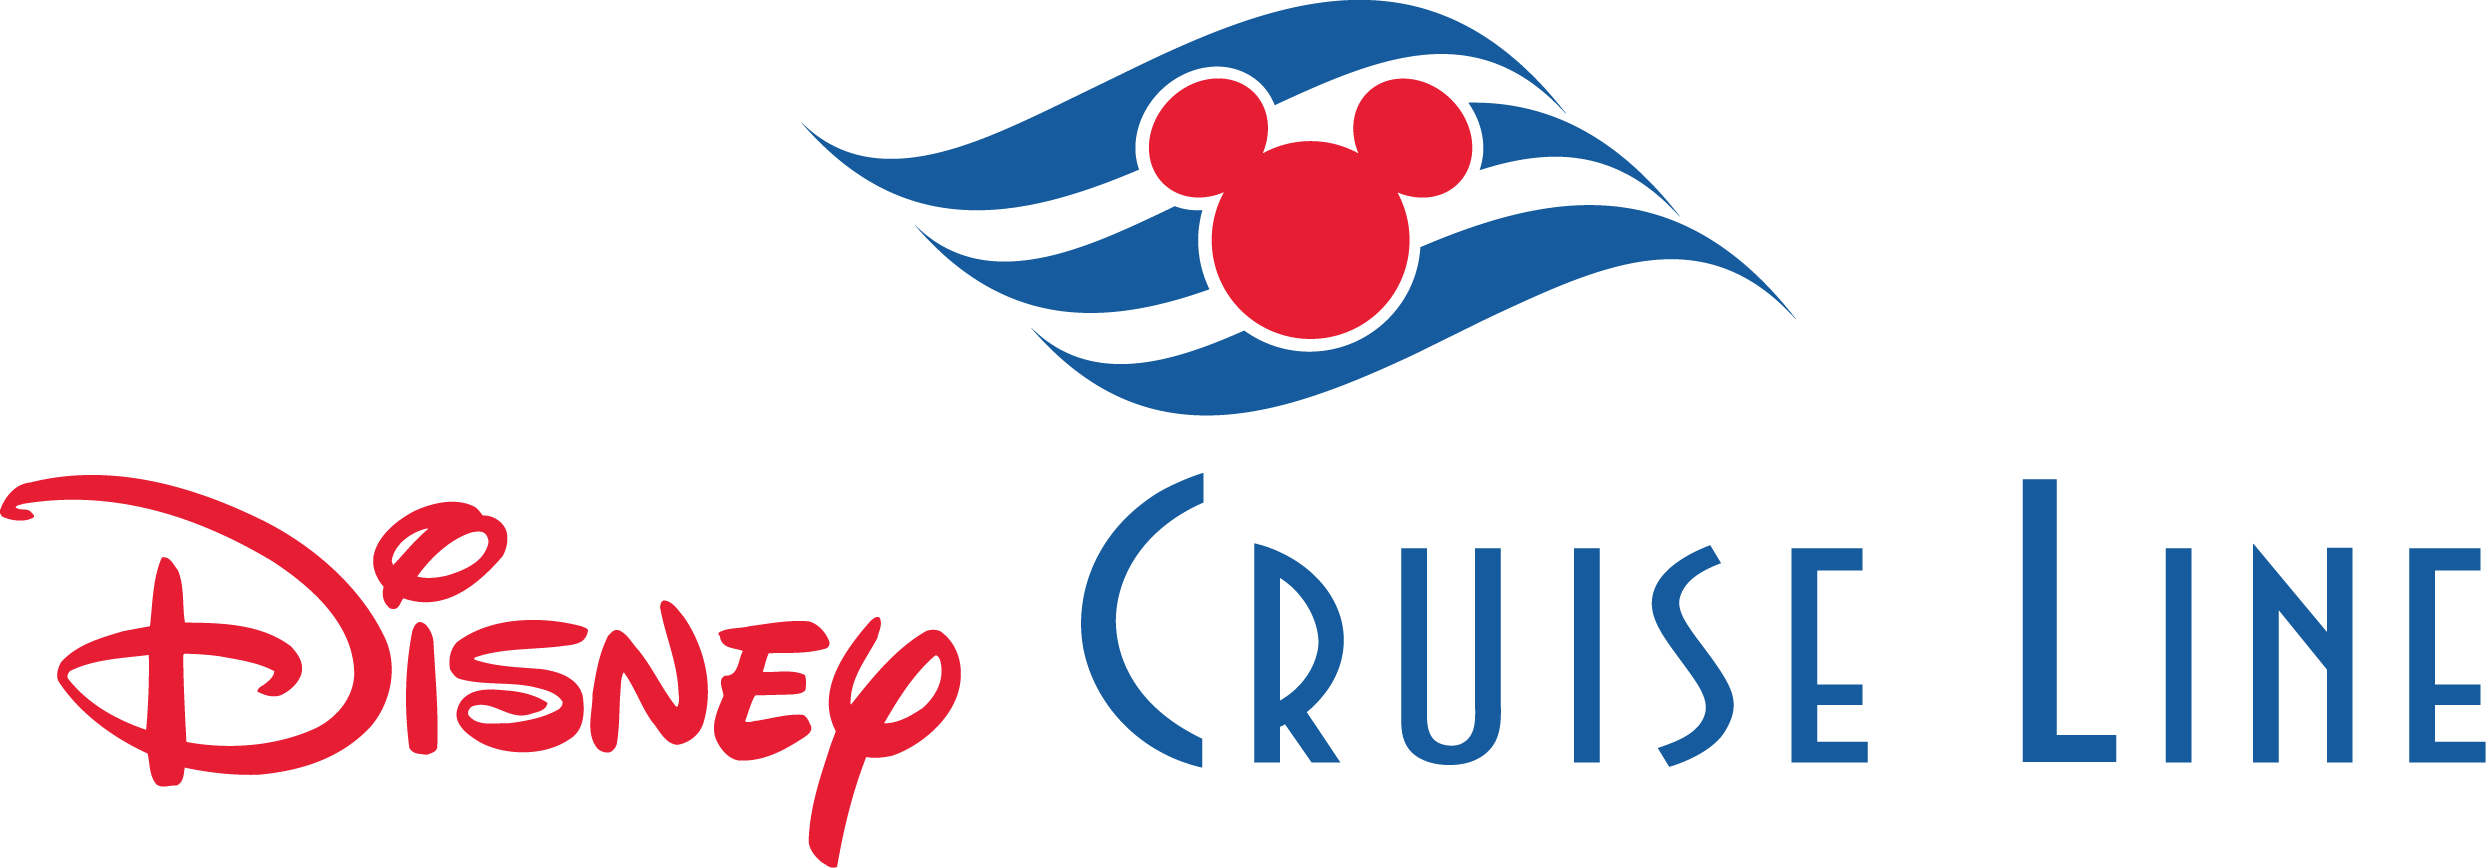 Disney Cruise Line Logo png